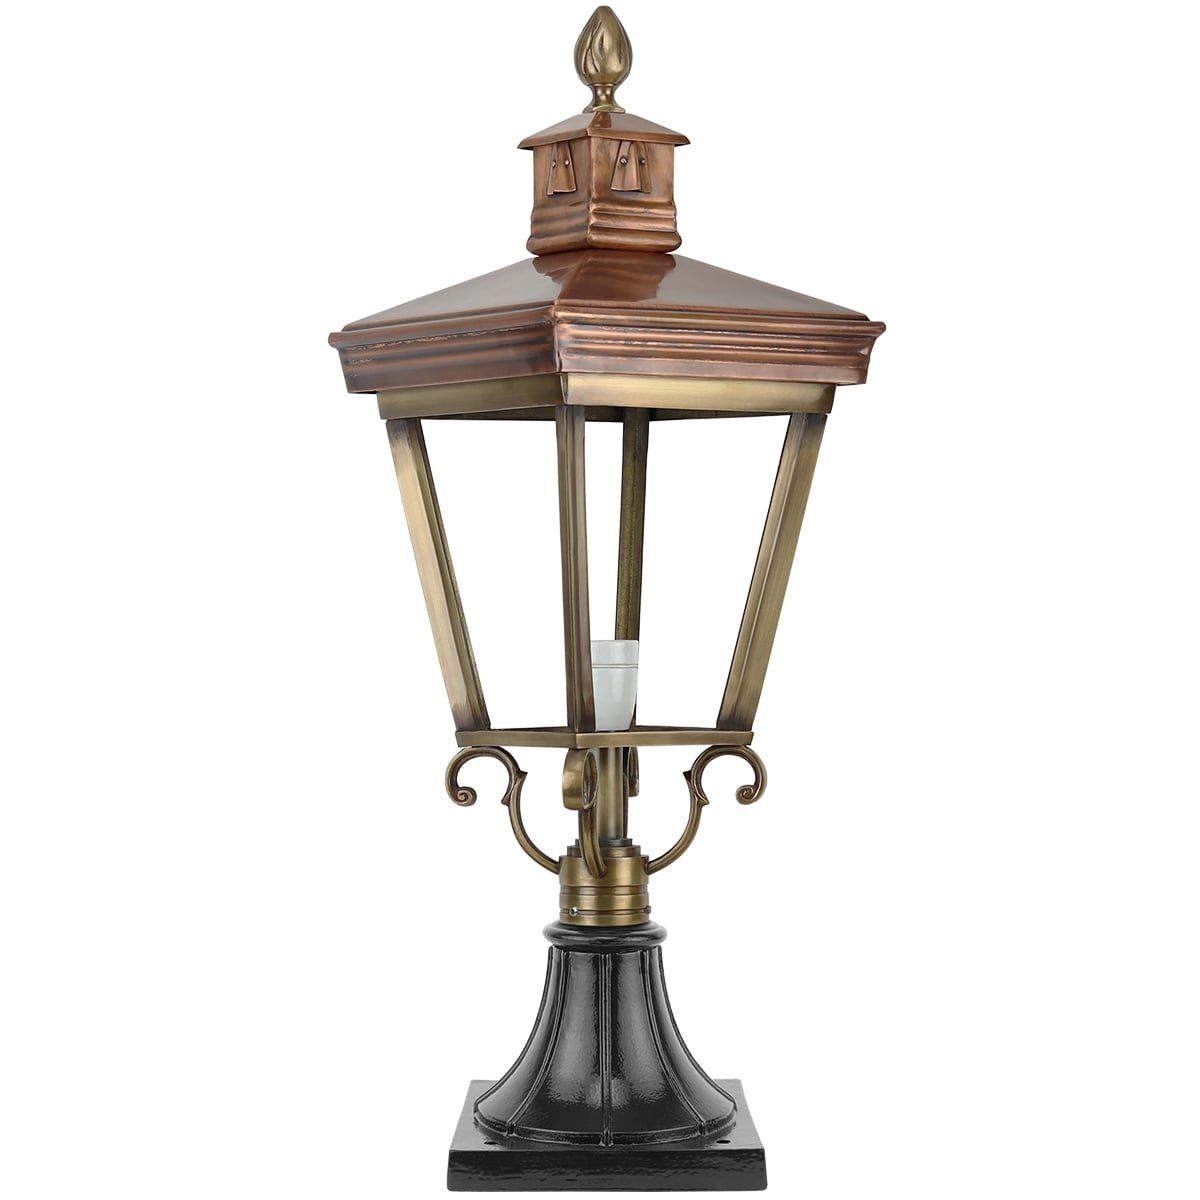 Buitenverlichting Klassiek Nostalgisch Erf lamp Exloërveen brons - 75 cm